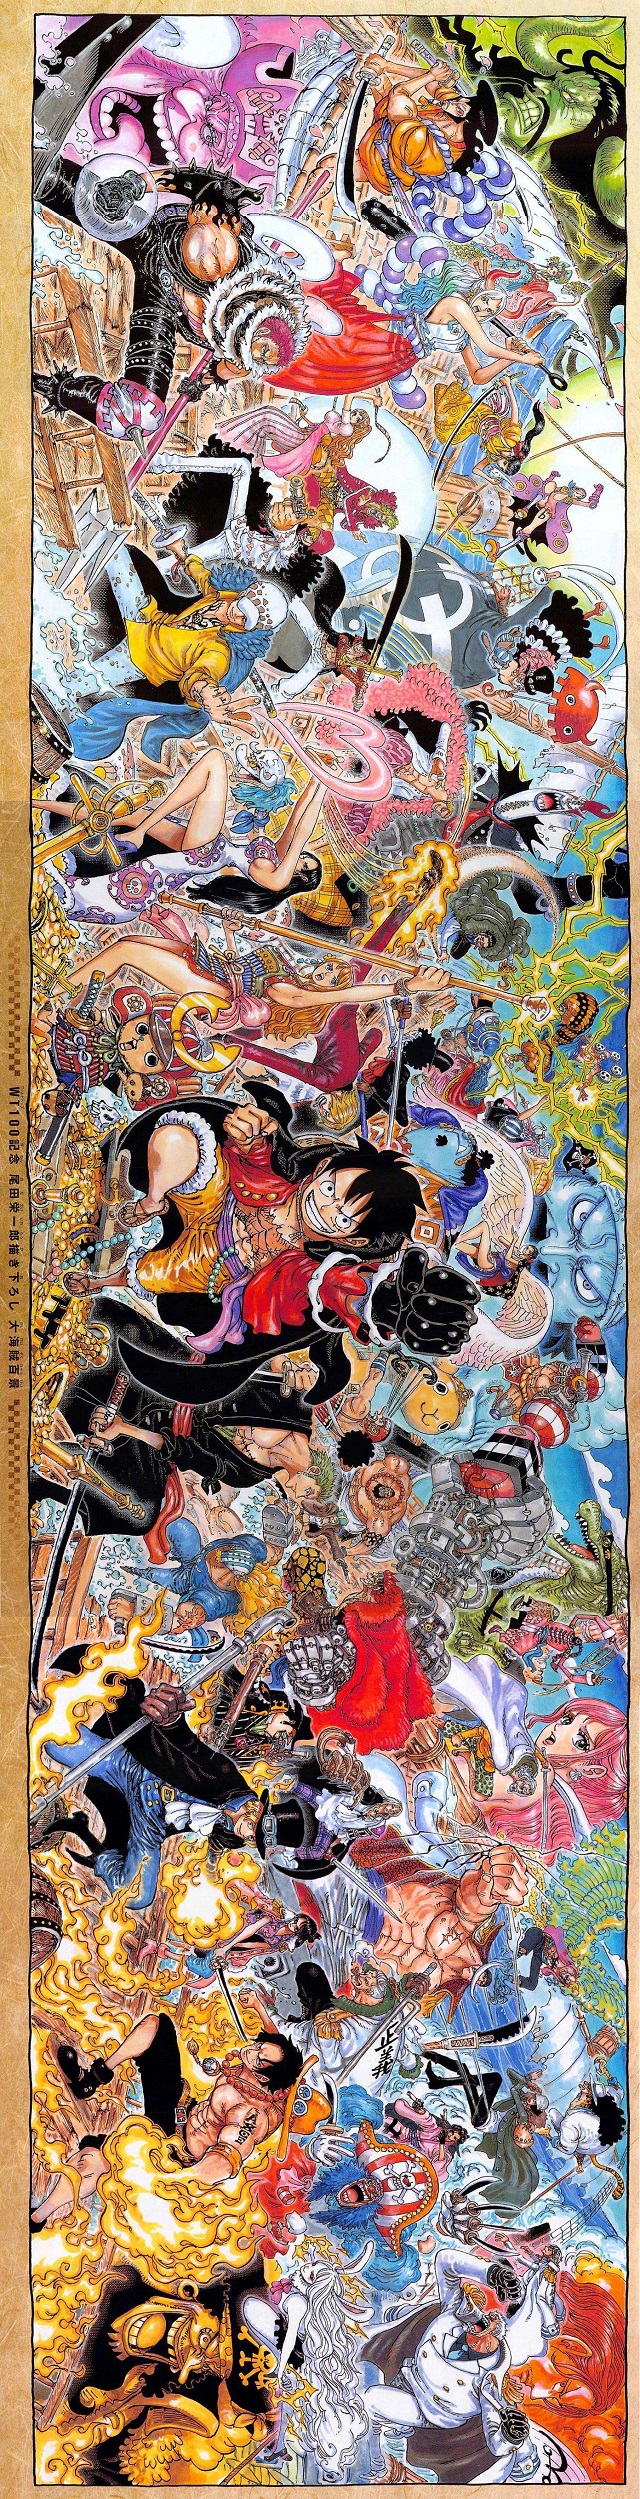 尾田荣一郎绘制「海贼王」100卷纪念巨幅海报公布